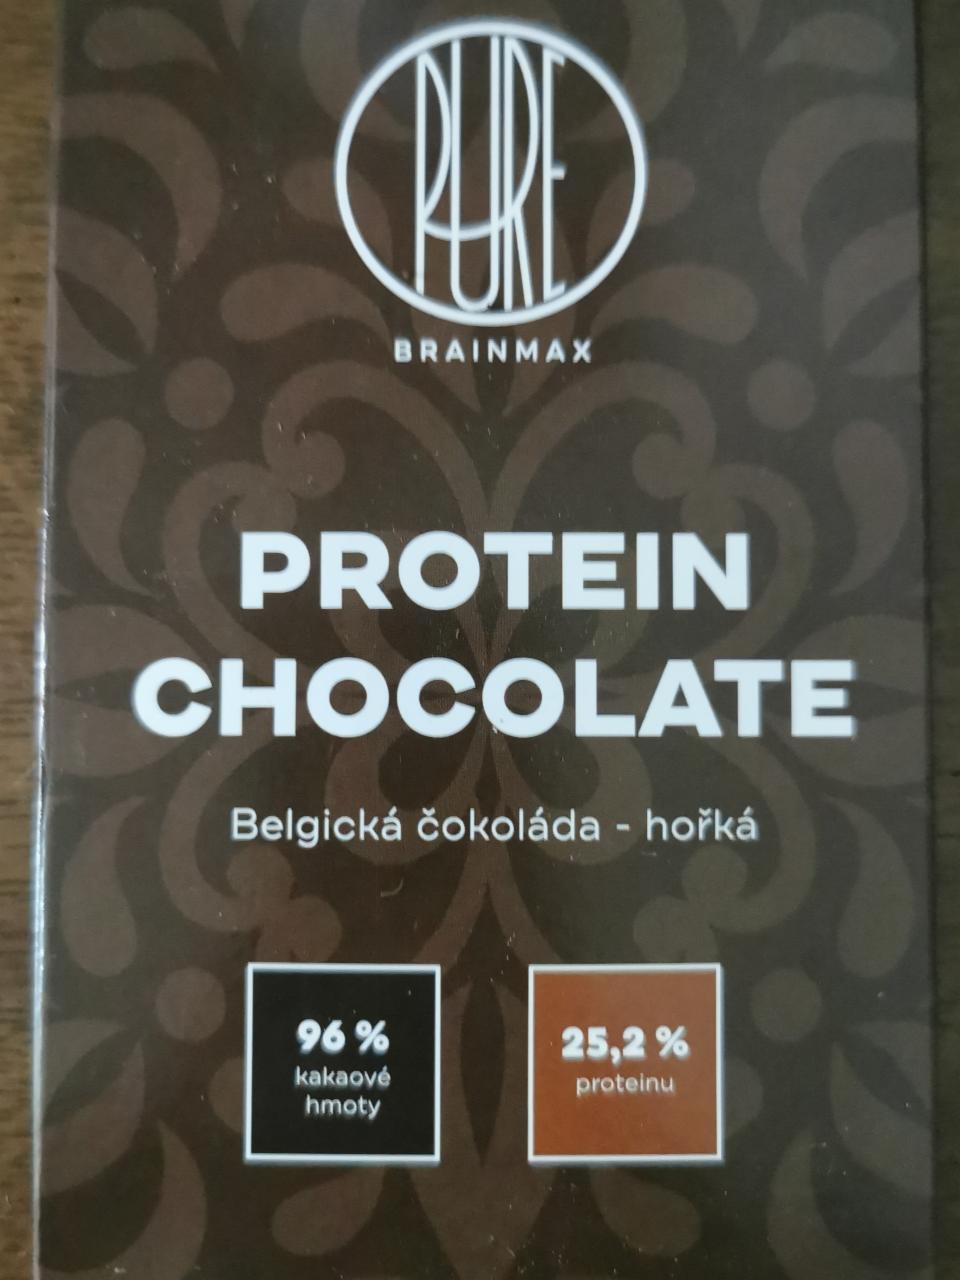 Fotografie - Pure Protein Chocolate Belgická čokoláda - hořká BrainMax